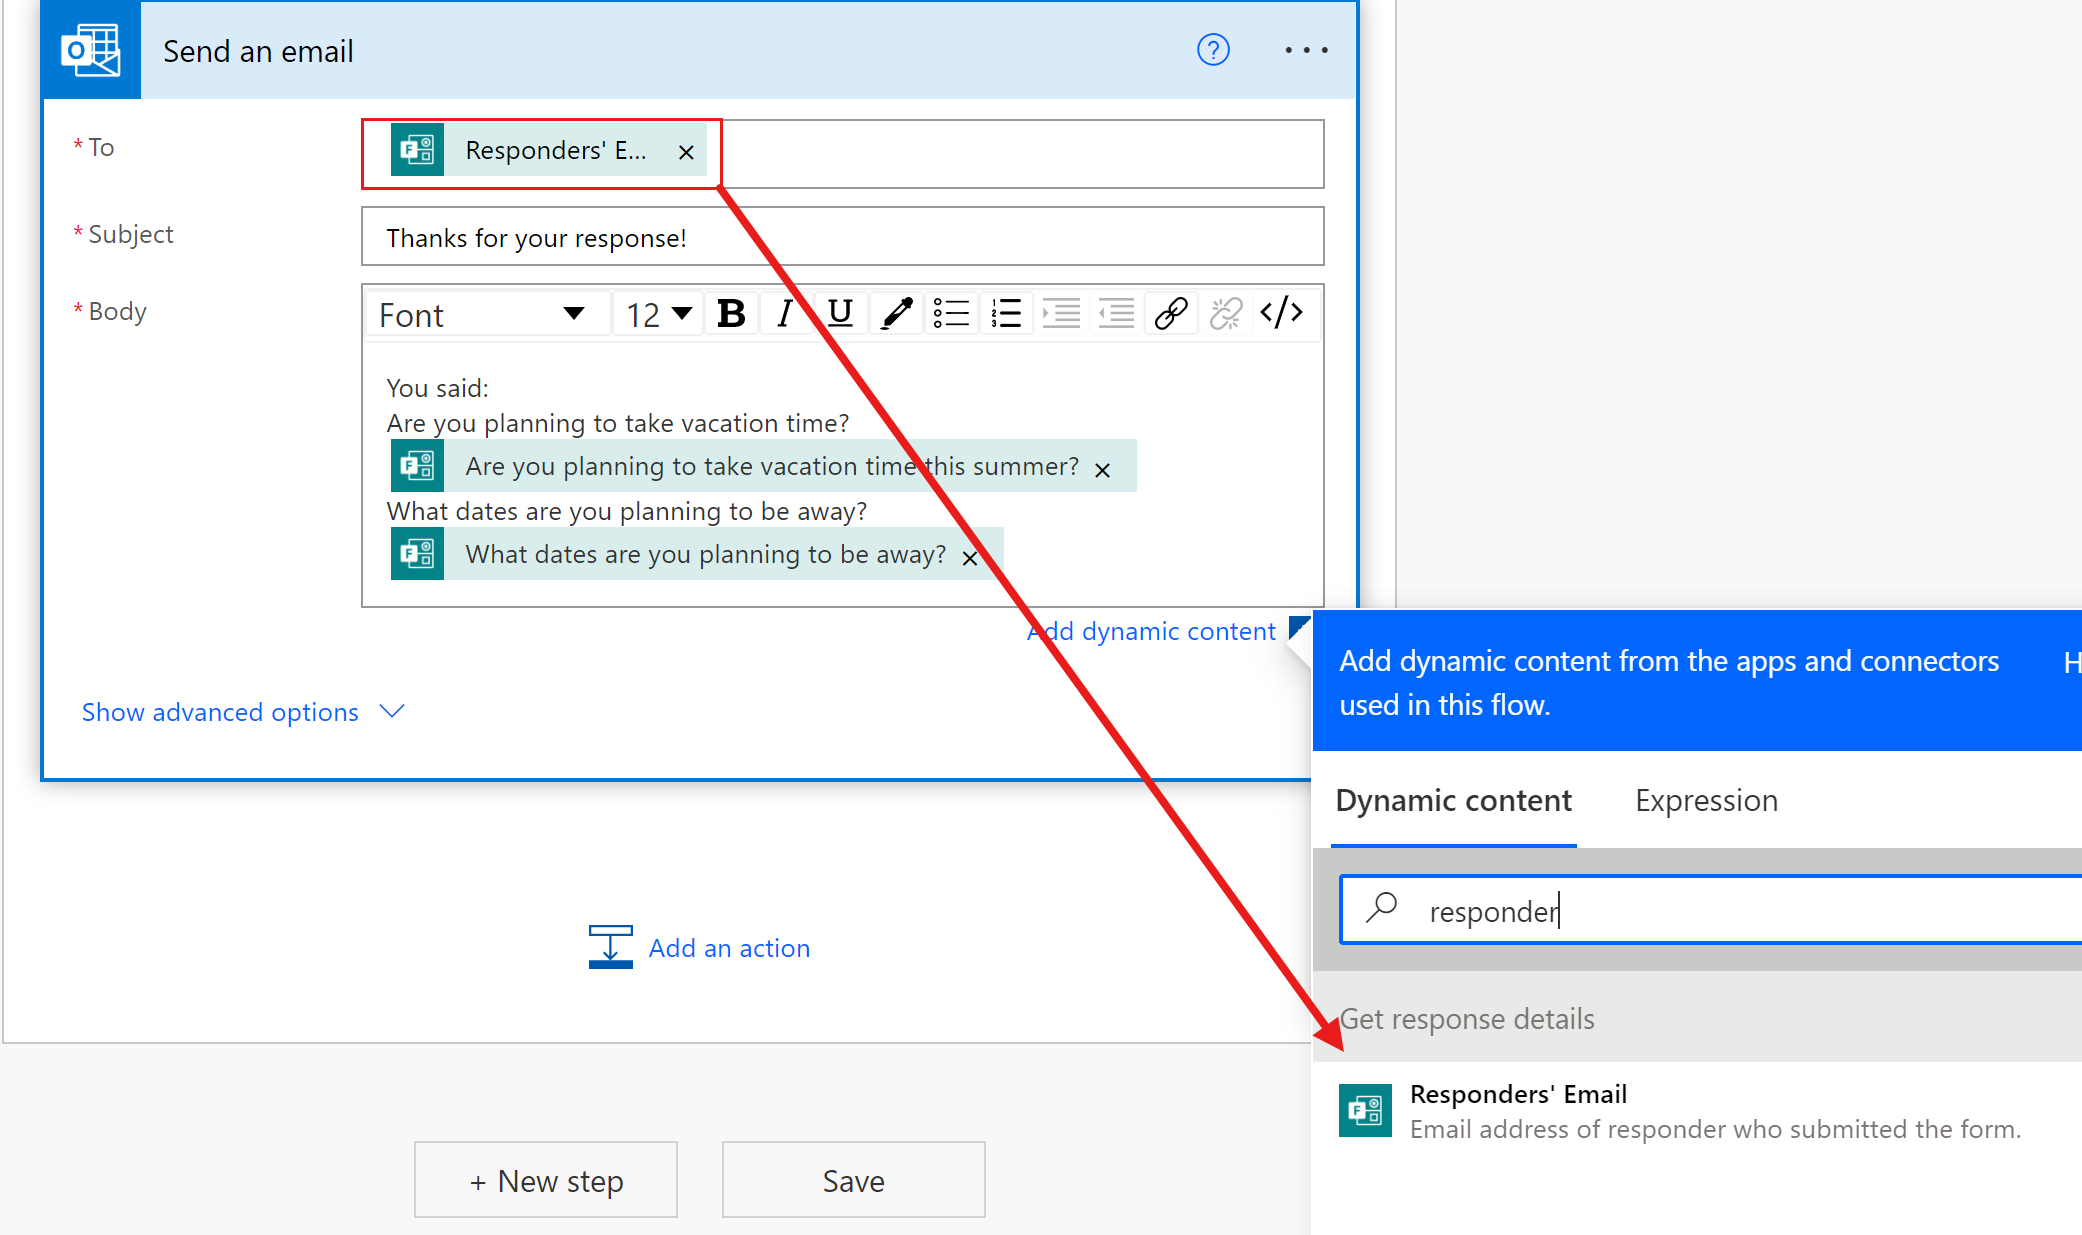 Captura de pantalla de una acción de envío de correo electrónico de Outlook en un flujo en construcción, con la dirección de correo electrónico del respondedor resaltada.